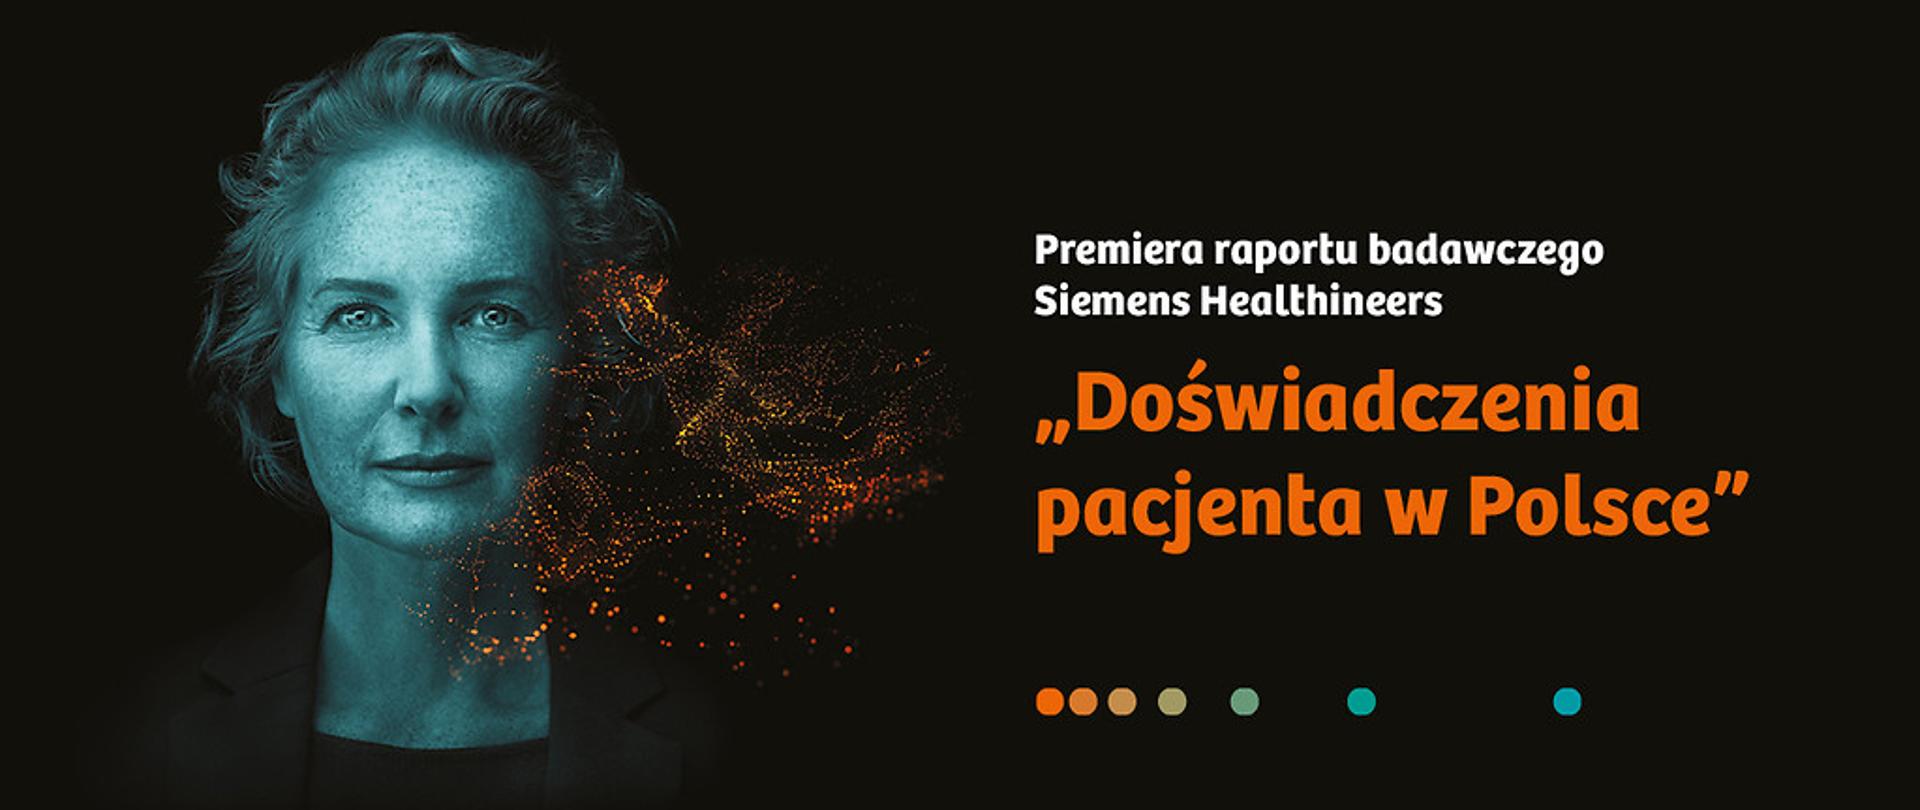 Premiera raportu Siemensa "Patient Experience - co to znaczy być pacjentem w Polsce" 